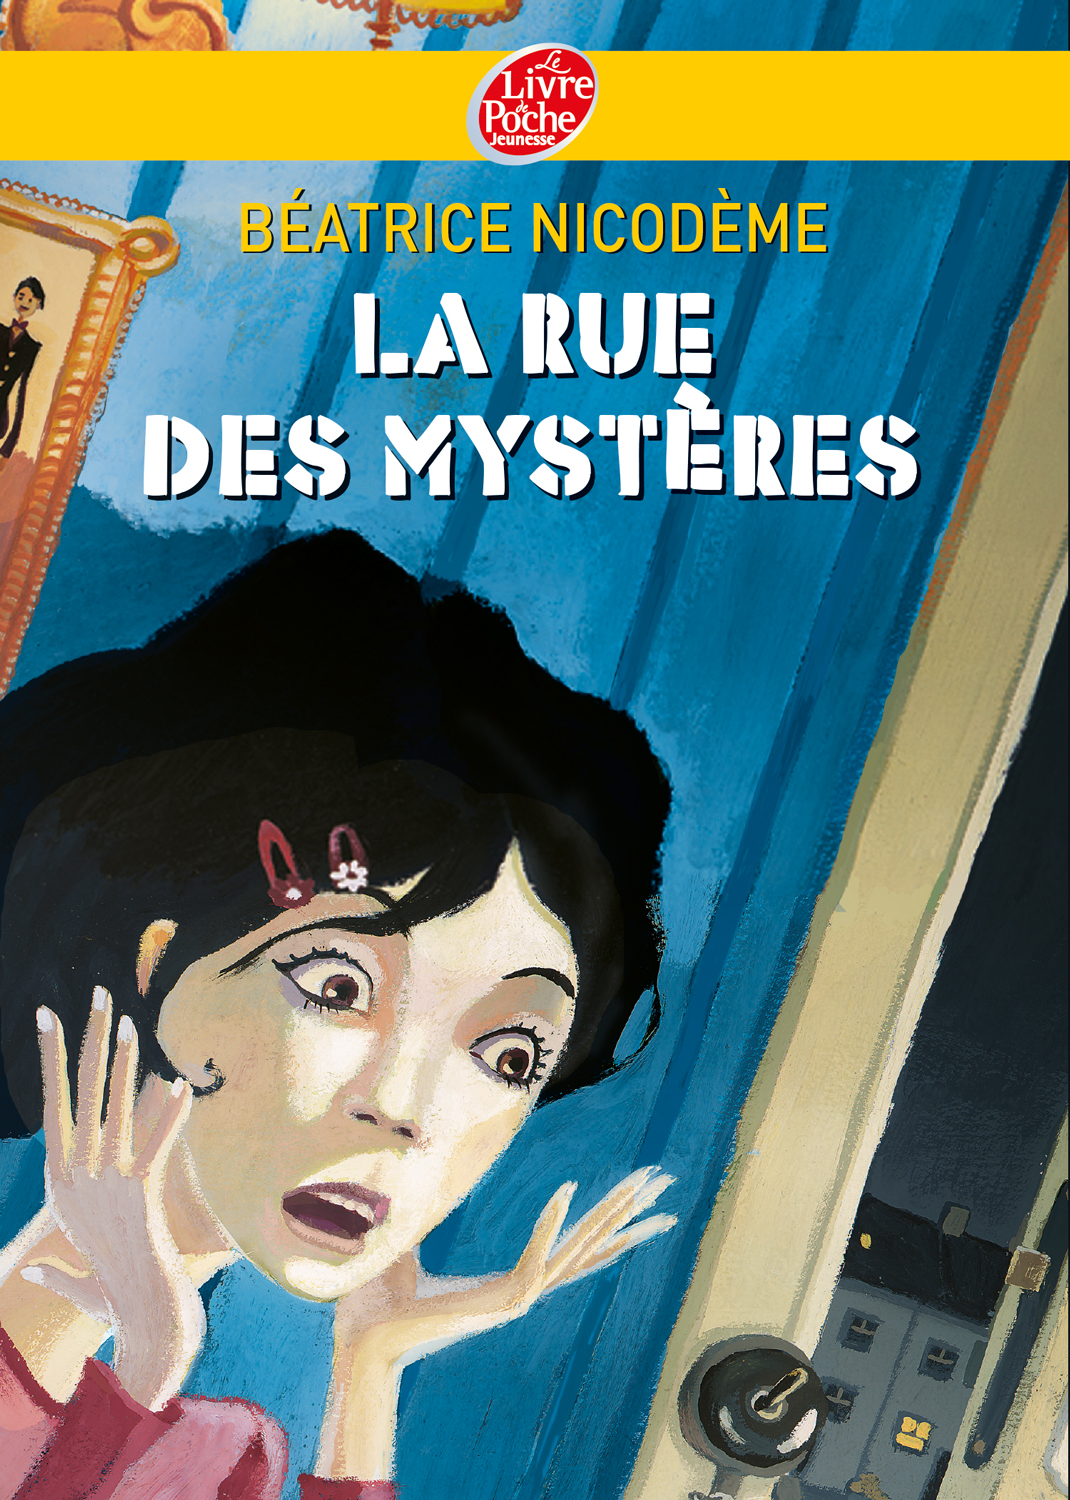 Beatrice Nicodeme autrice couverture du roman La rue des mysteres